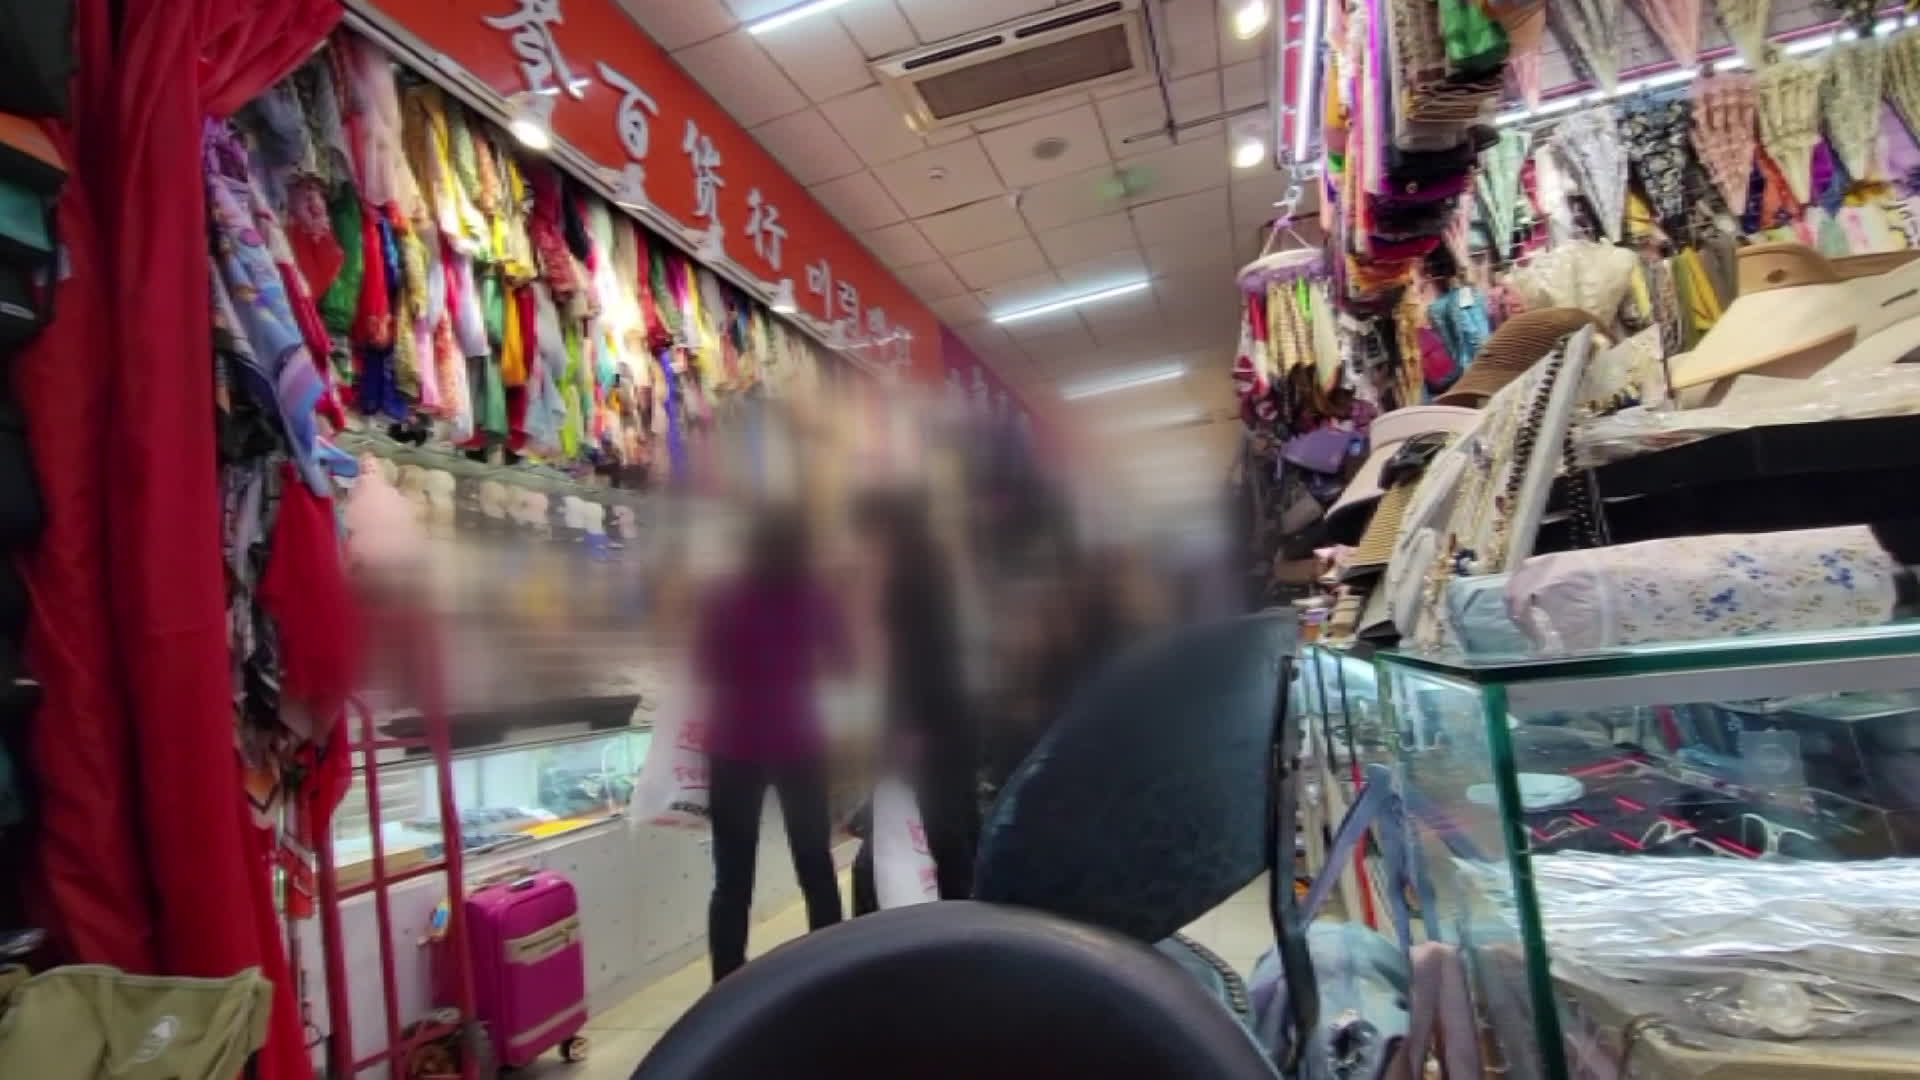 쇼핑에 한창인 북한 노동자들. 이들에게는 1년에 최대 세 번 외출이 허용된다.